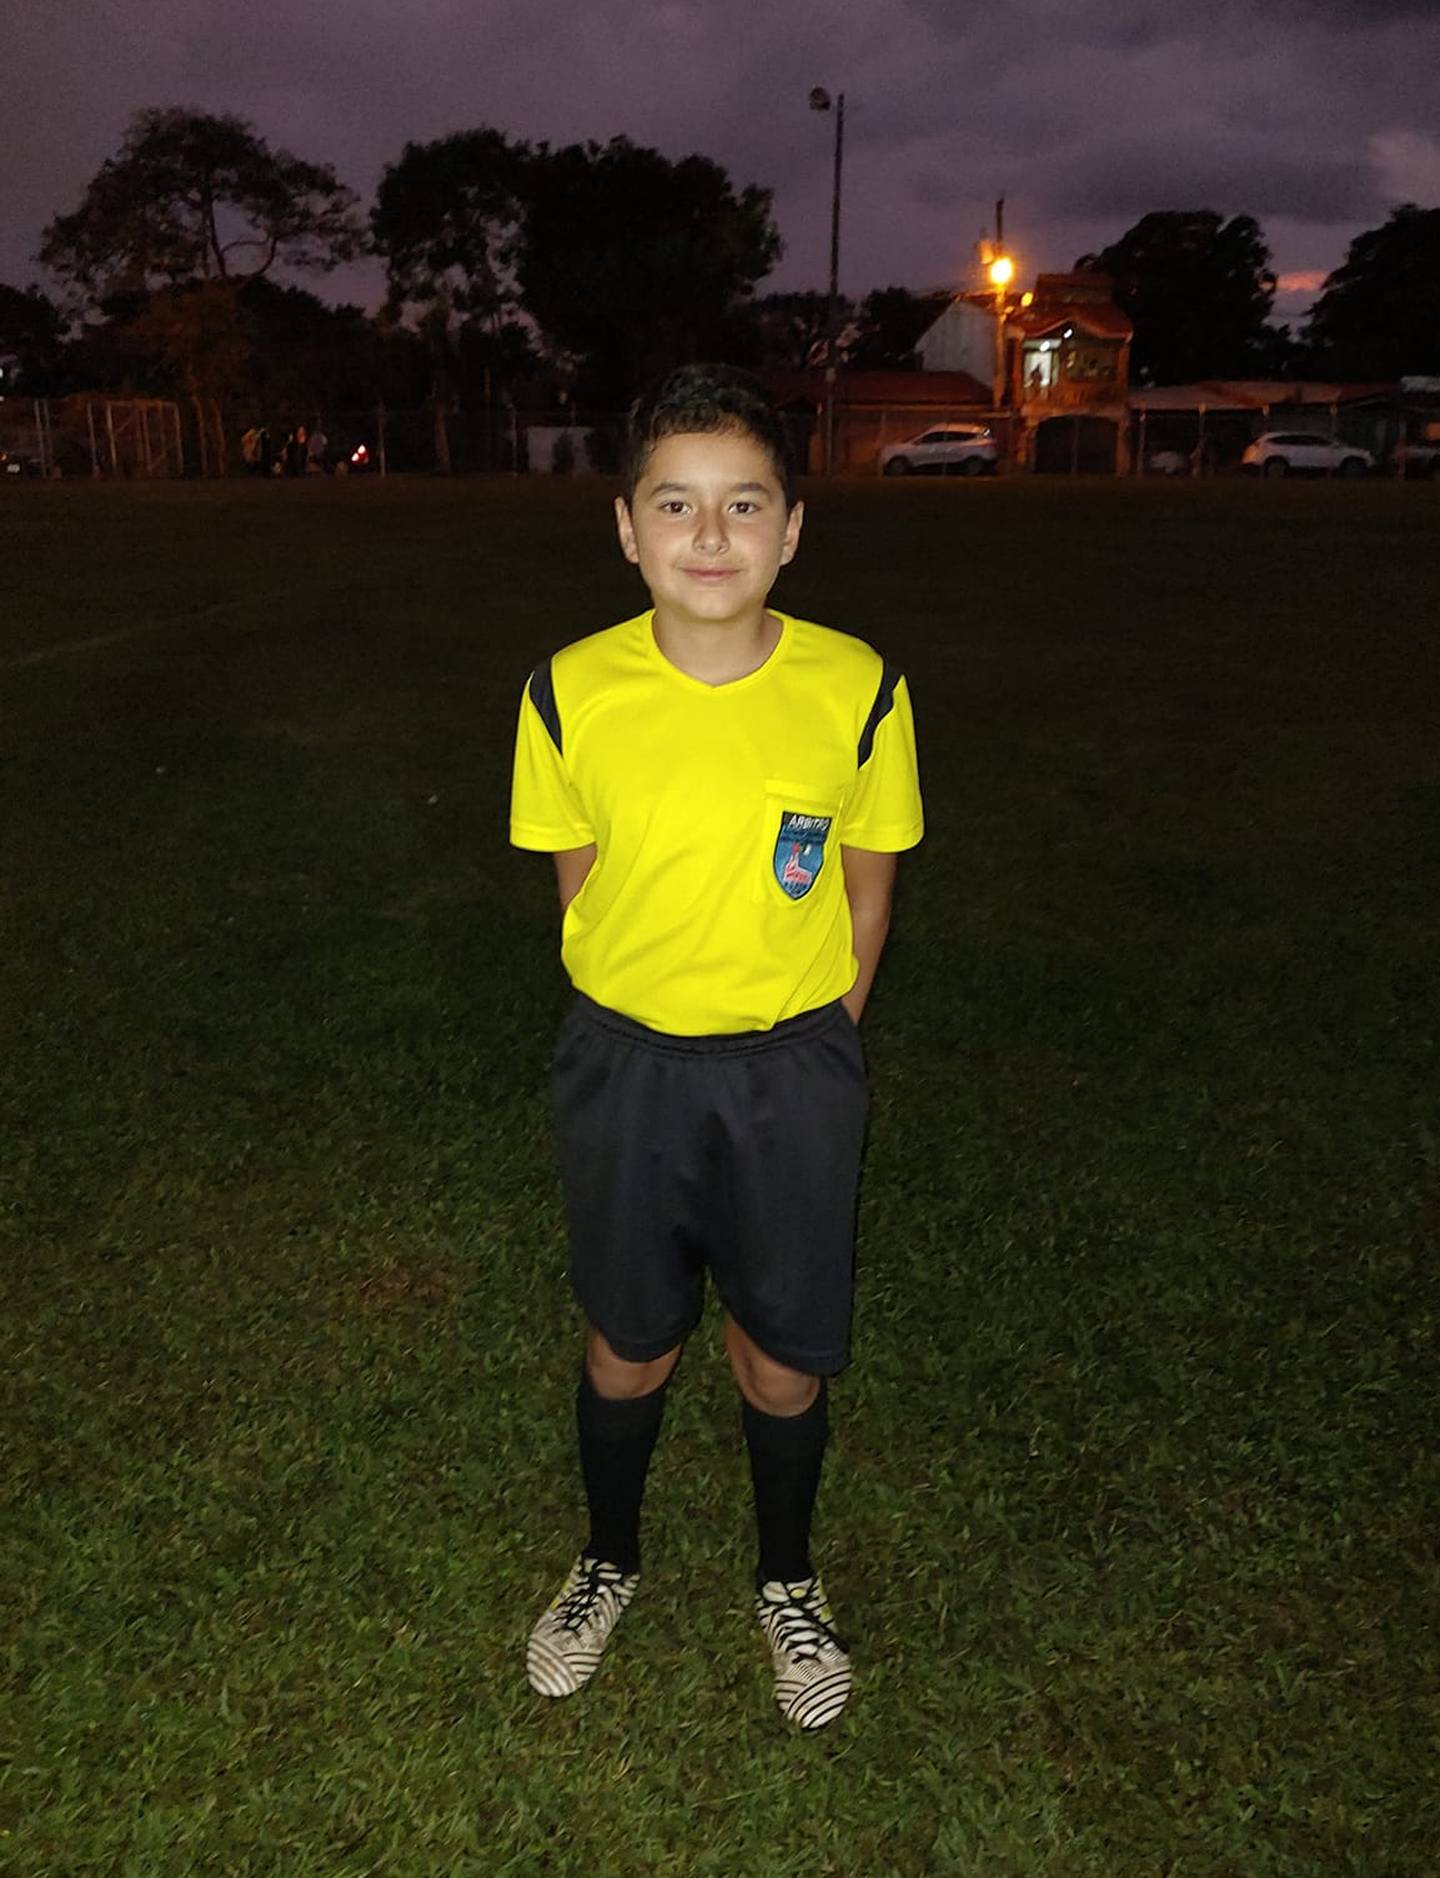 Abraham Rojas Suárez es un niño de 12 años de Grecia que ya se capacitó como árbitro de fútbol.